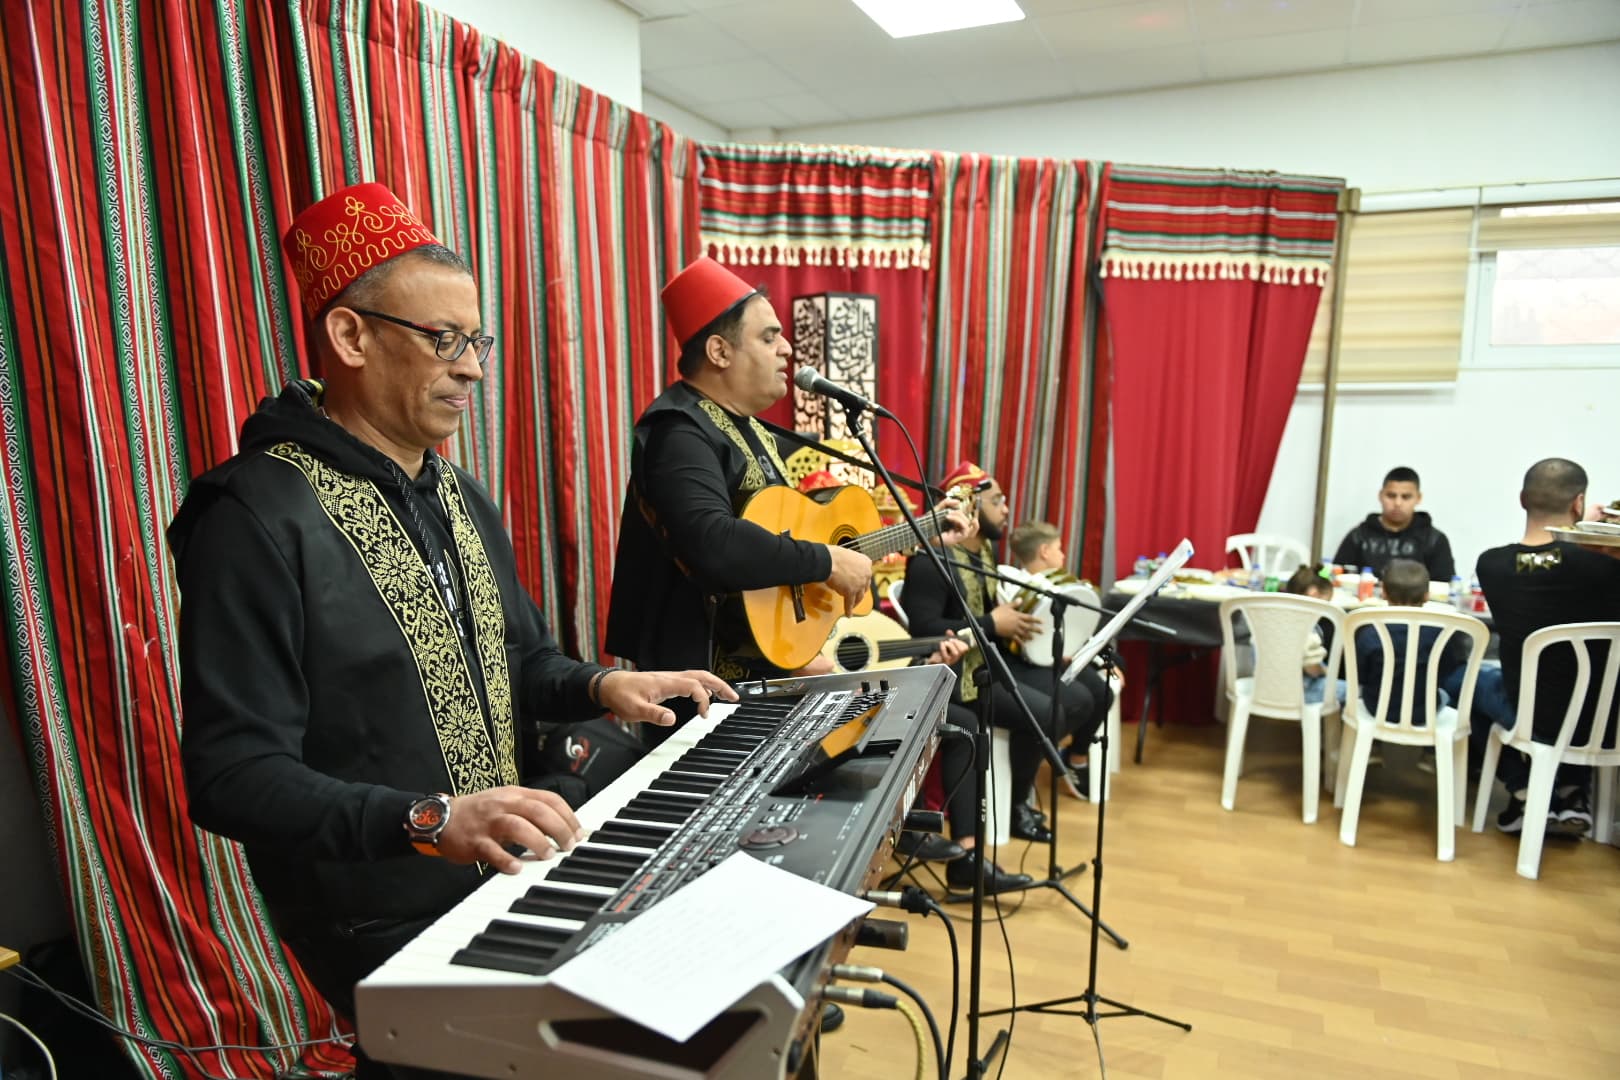 מוזיקאים מנגנים מוזיקה ערבית בחגיגת אפטאר בבית הספר היסודי אחווה בחיפה, 13 באפריל 2023 (צילום: כנען לידור)